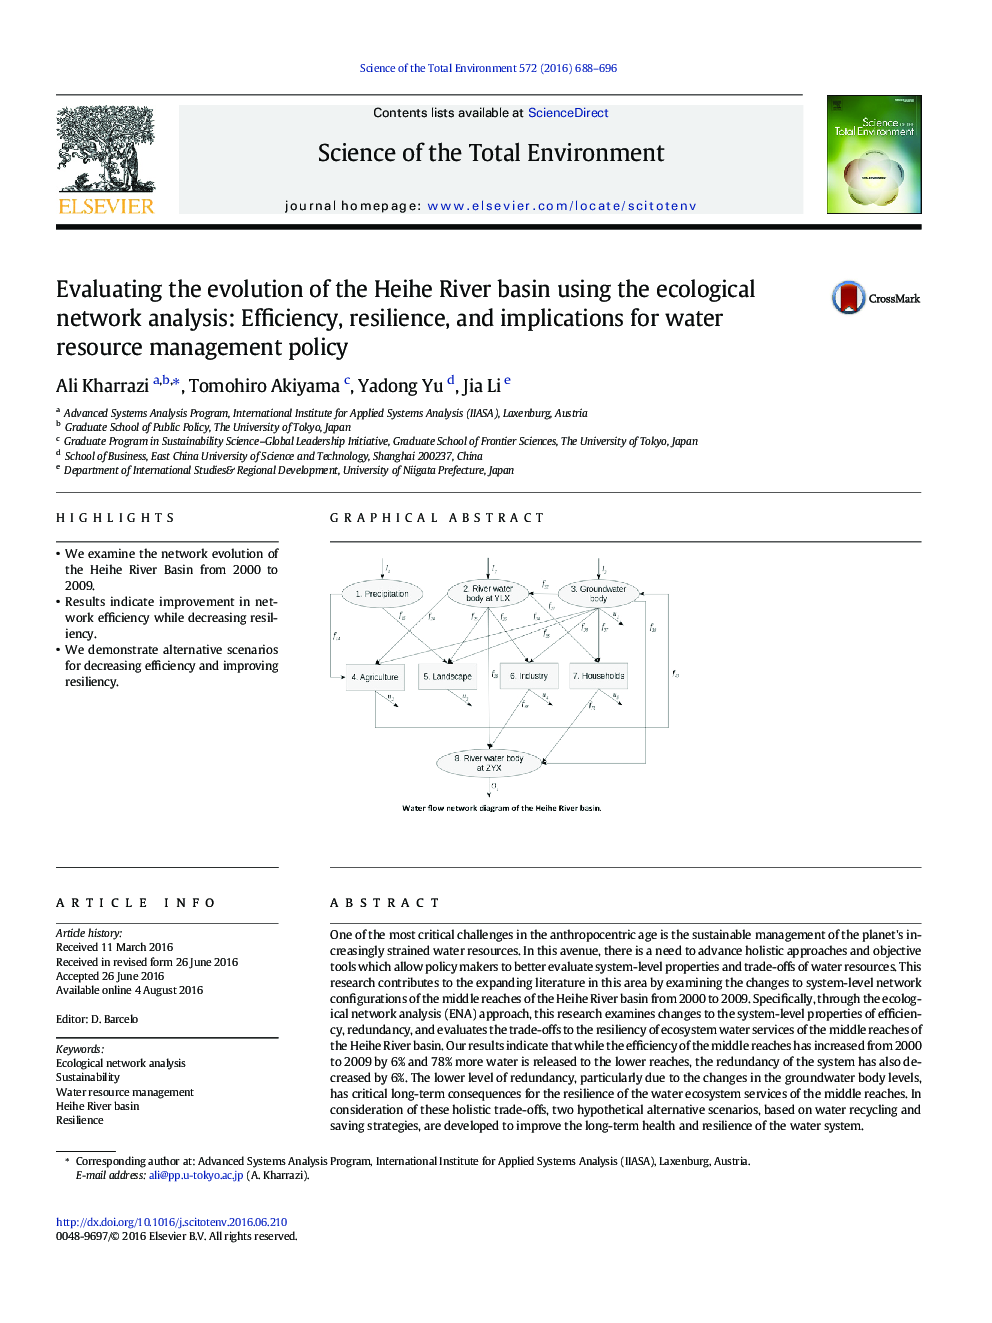 ارزیابی تکامل حوضه حیاط با استفاده از تحلیل شبکه اکولوژیک: کارایی، انعطاف پذیری و پیامدهای آن برای سیاست مدیریت منابع آب 